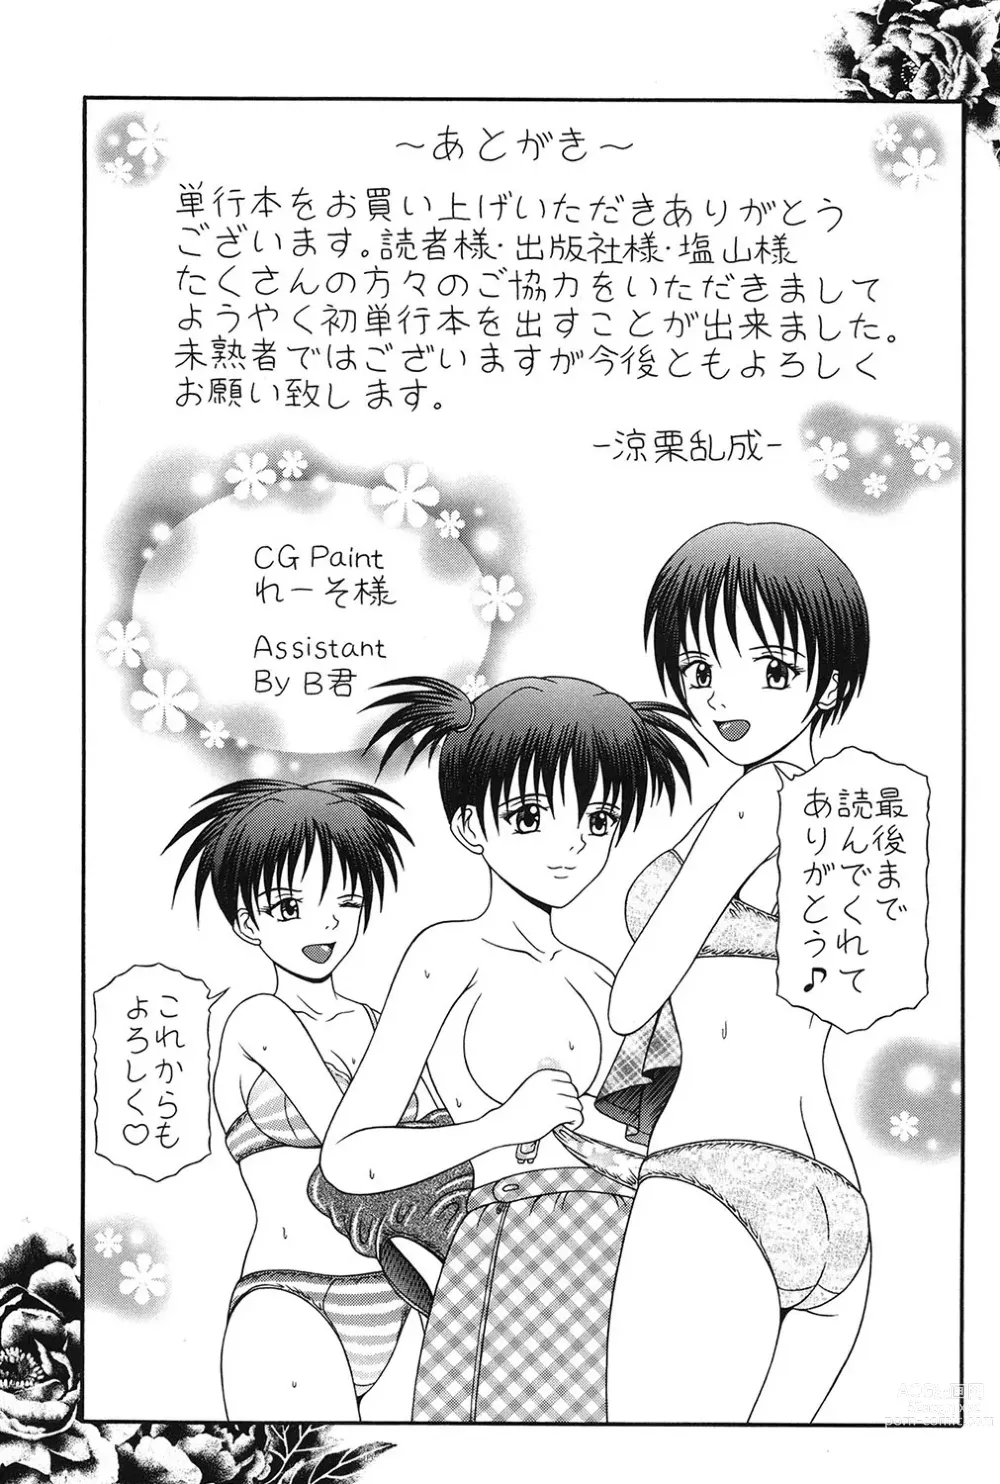 Page 148 of manga Todokanai Zekkyou - Nicht Erreichen Schreien